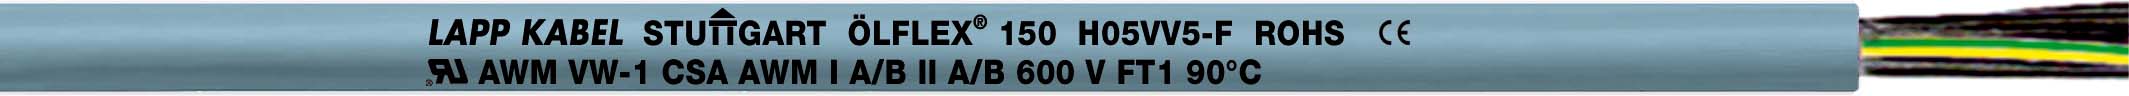 Lapp Kabel&Leitung ÖLFLEX 150 QUATTRO 3G0,5 0015003 T600 - 0015003/600